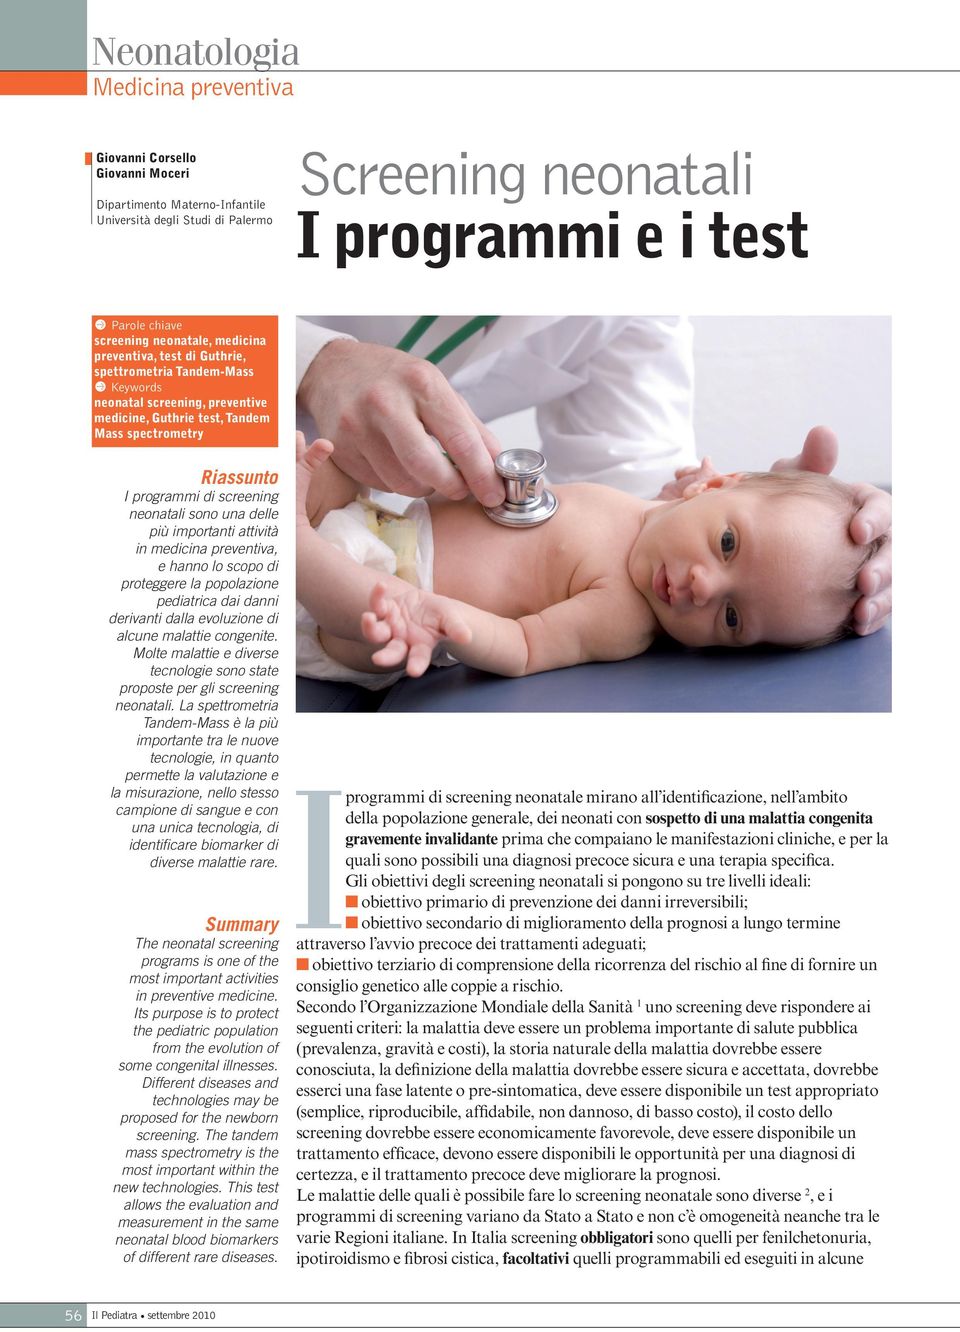 screening neonatali sono una delle più importanti attività in medicina preventiva, e hanno lo scopo di proteggere la popolazione pediatrica dai danni derivanti dalla evoluzione di alcune malattie